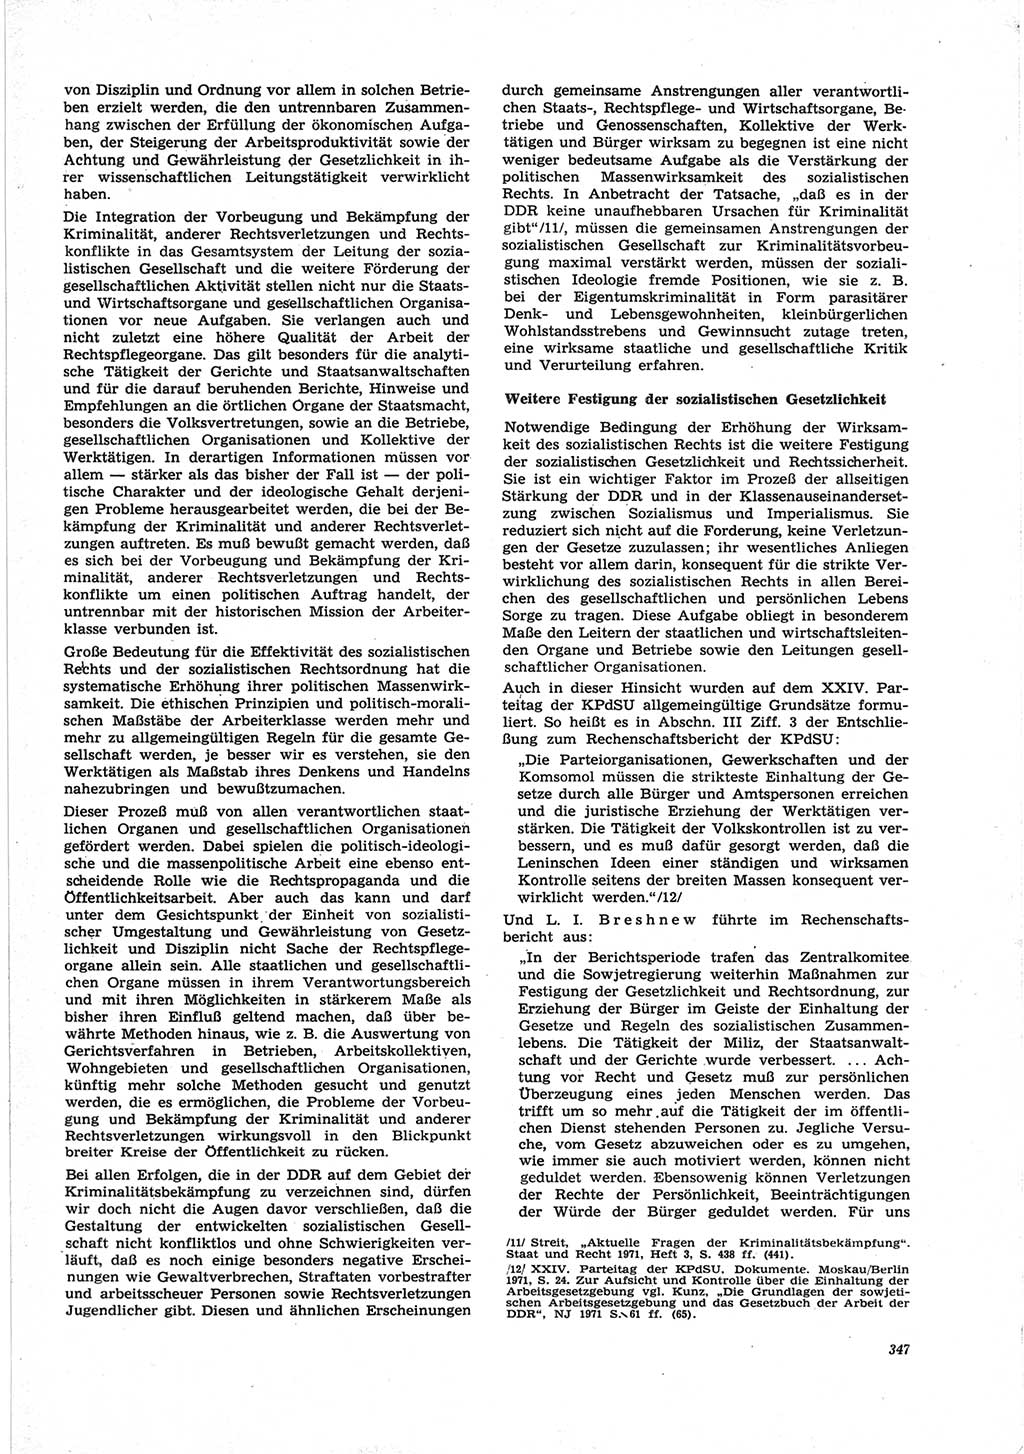 Neue Justiz (NJ), Zeitschrift für Recht und Rechtswissenschaft [Deutsche Demokratische Republik (DDR)], 25. Jahrgang 1971, Seite 347 (NJ DDR 1971, S. 347)